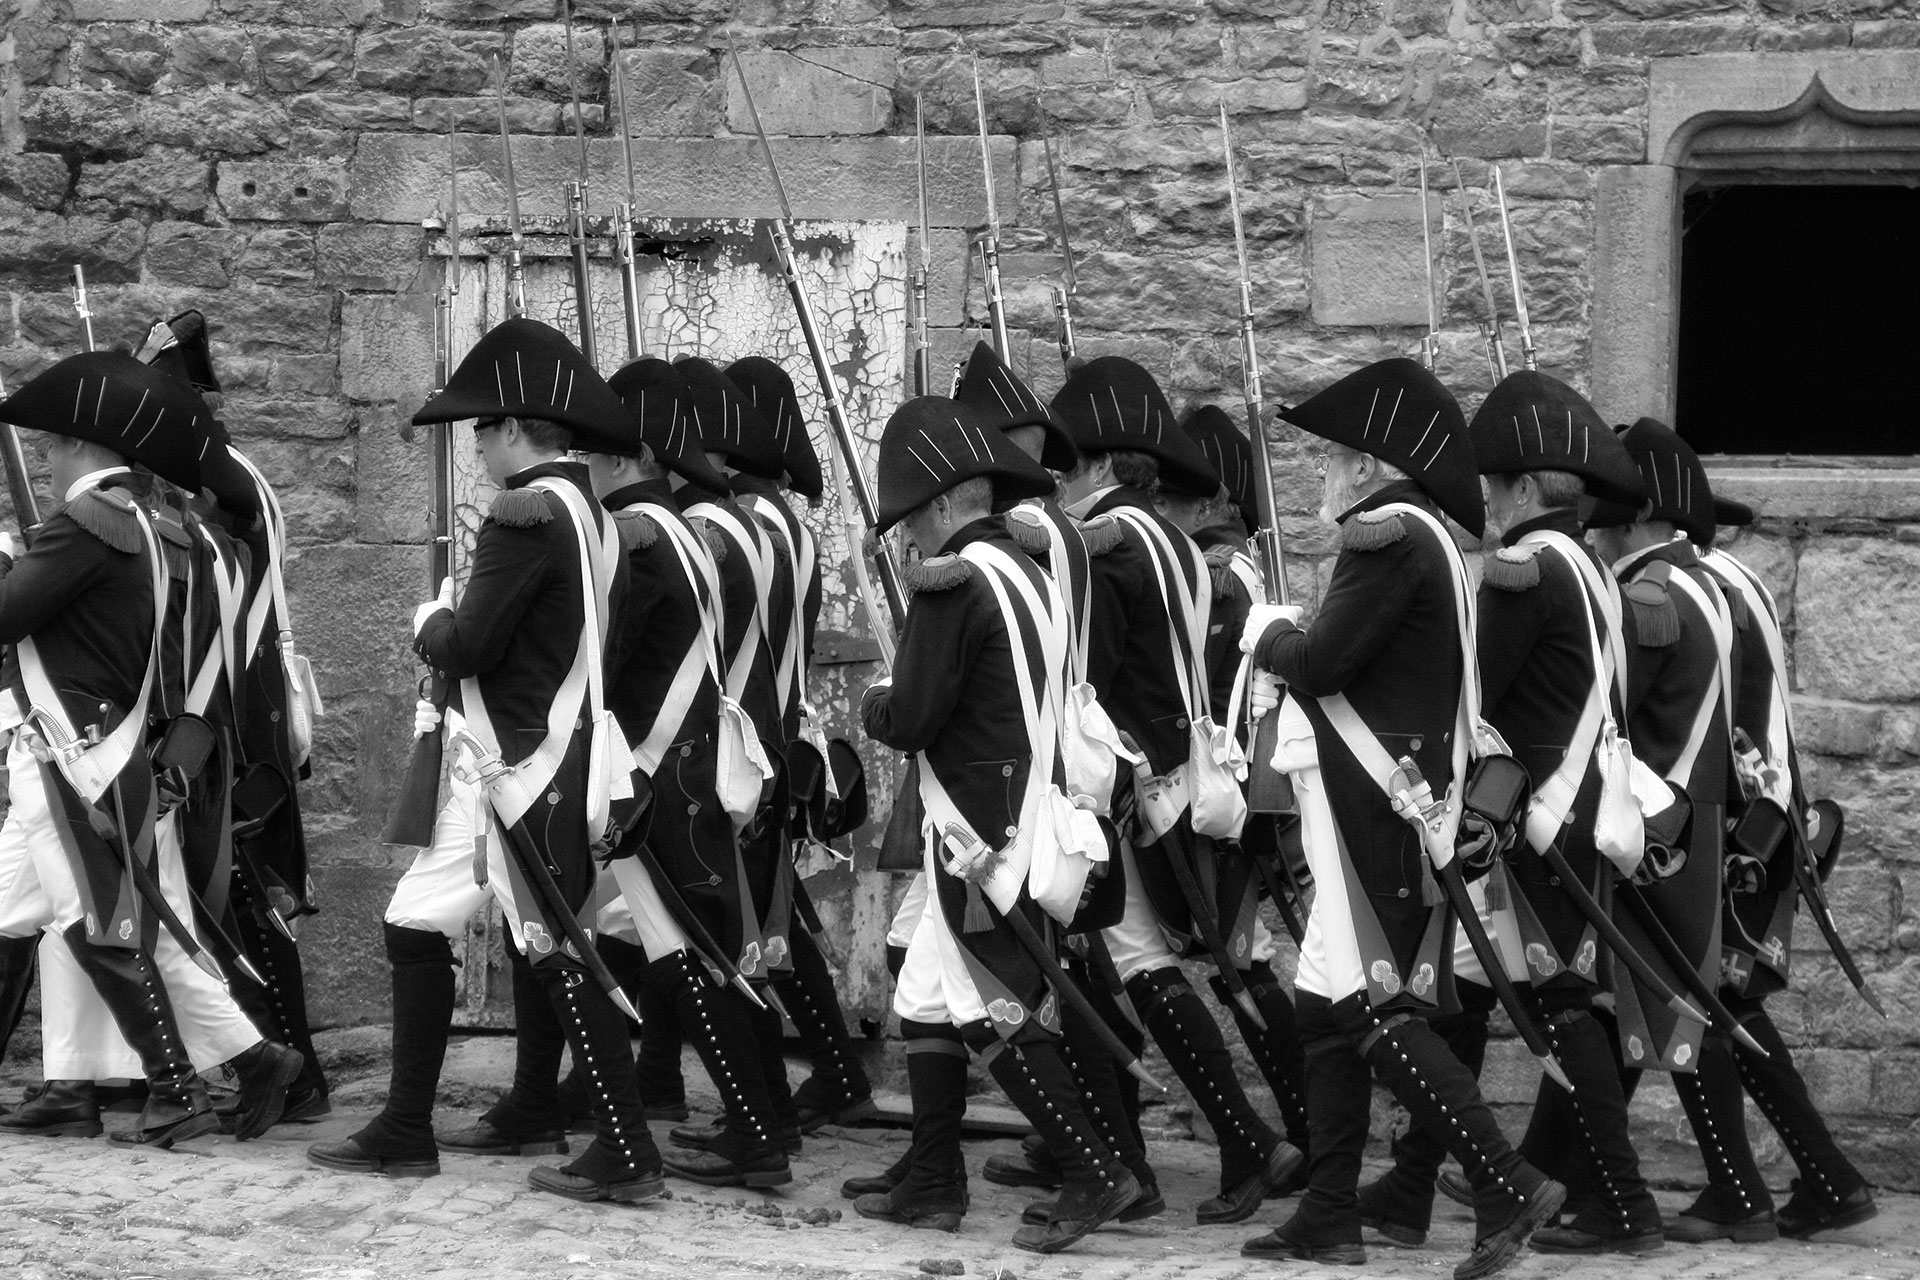 Soldats napoléoniens en rang défilant dans les rues d'un village